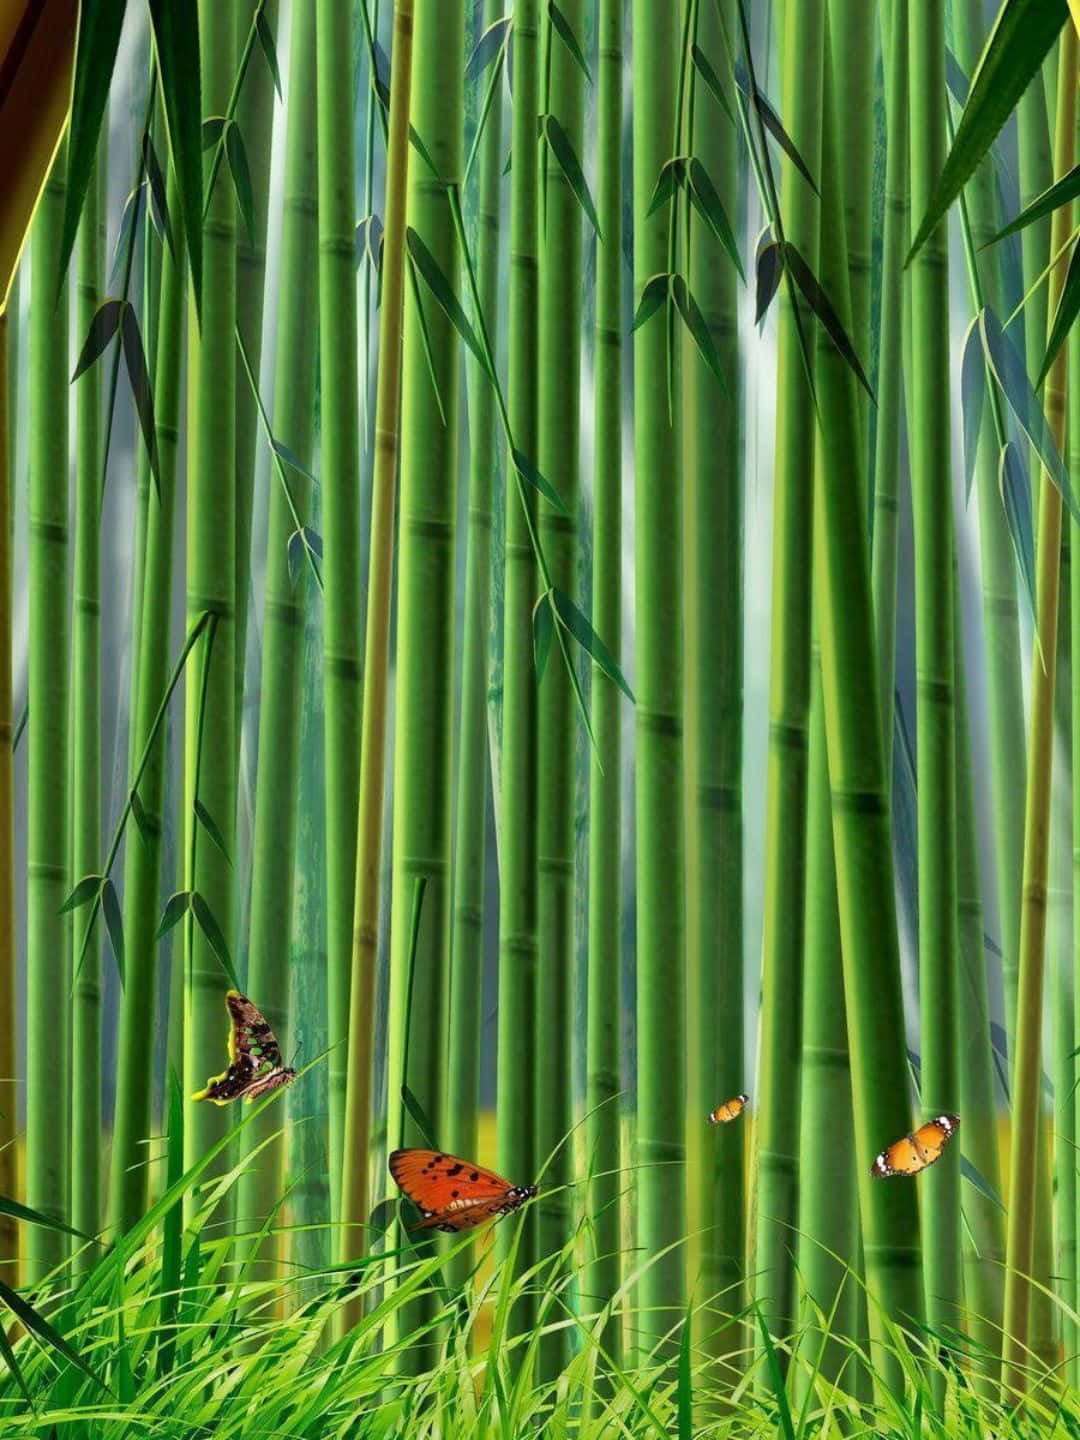 1440pfondo De Pantalla De Bambú Con Arte Fanart De Una Pintura Con Mariposas.